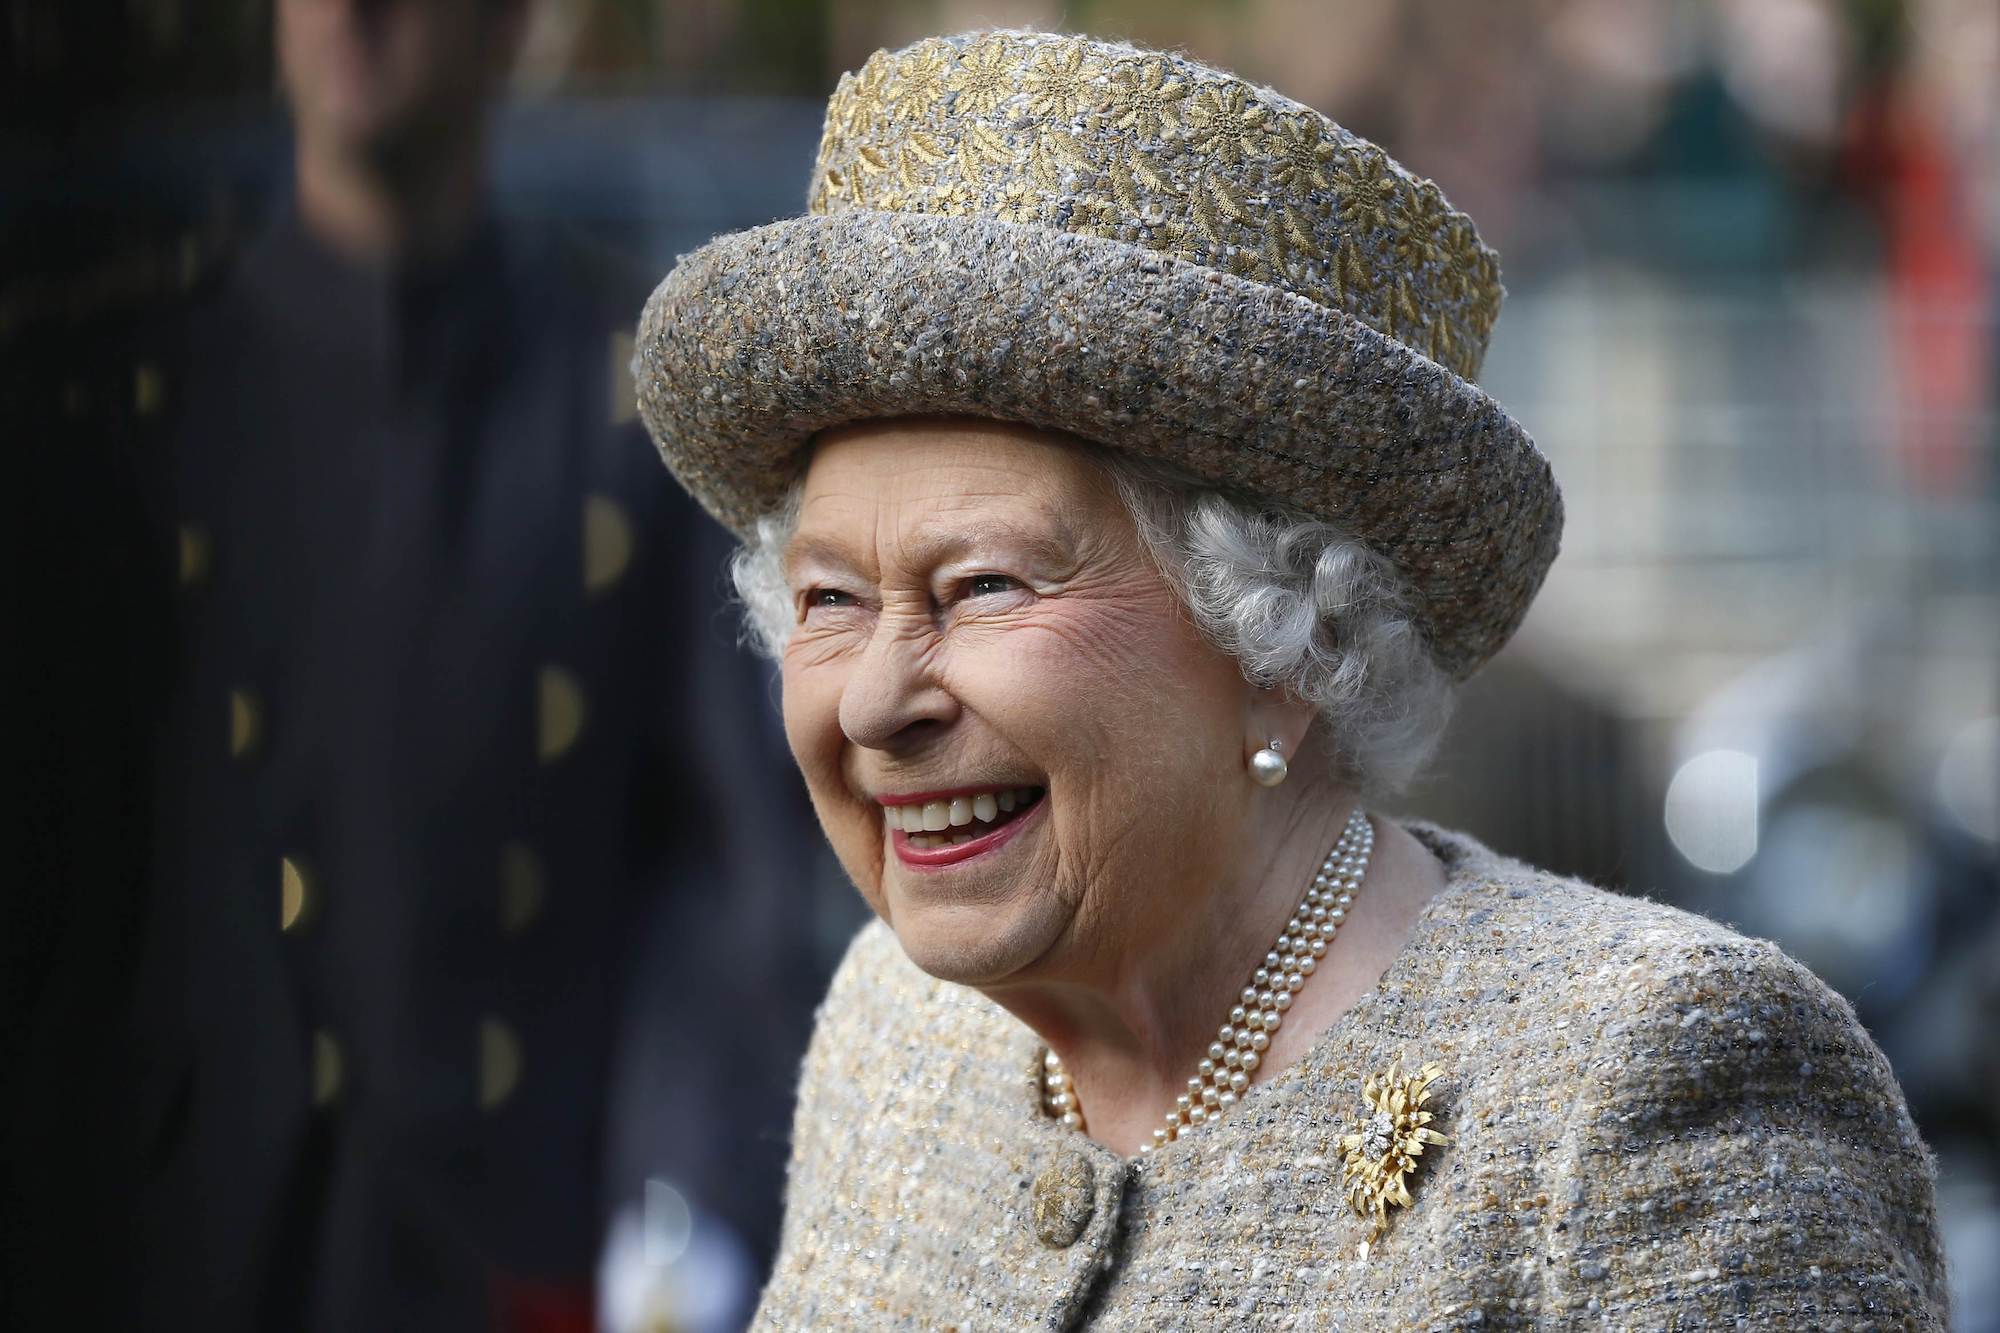 How Long Has Queen Elizabeth II Been on the Throne?